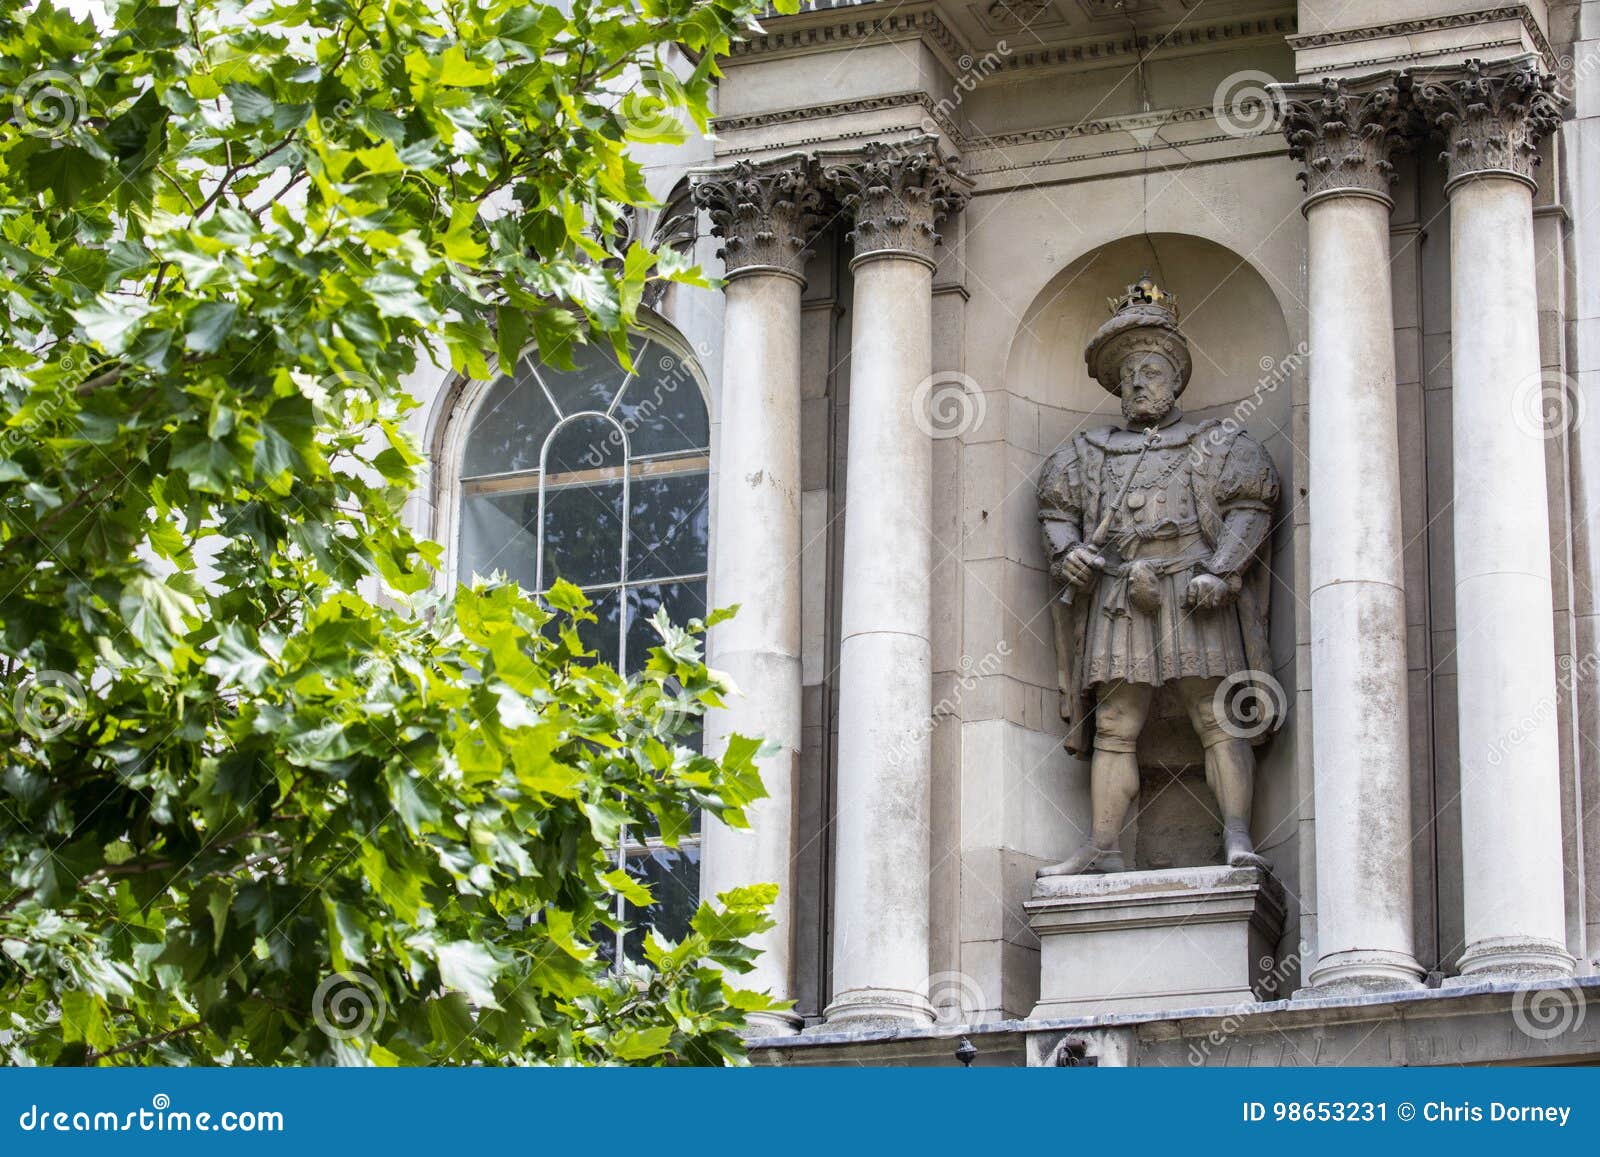 king henry viii statue in london